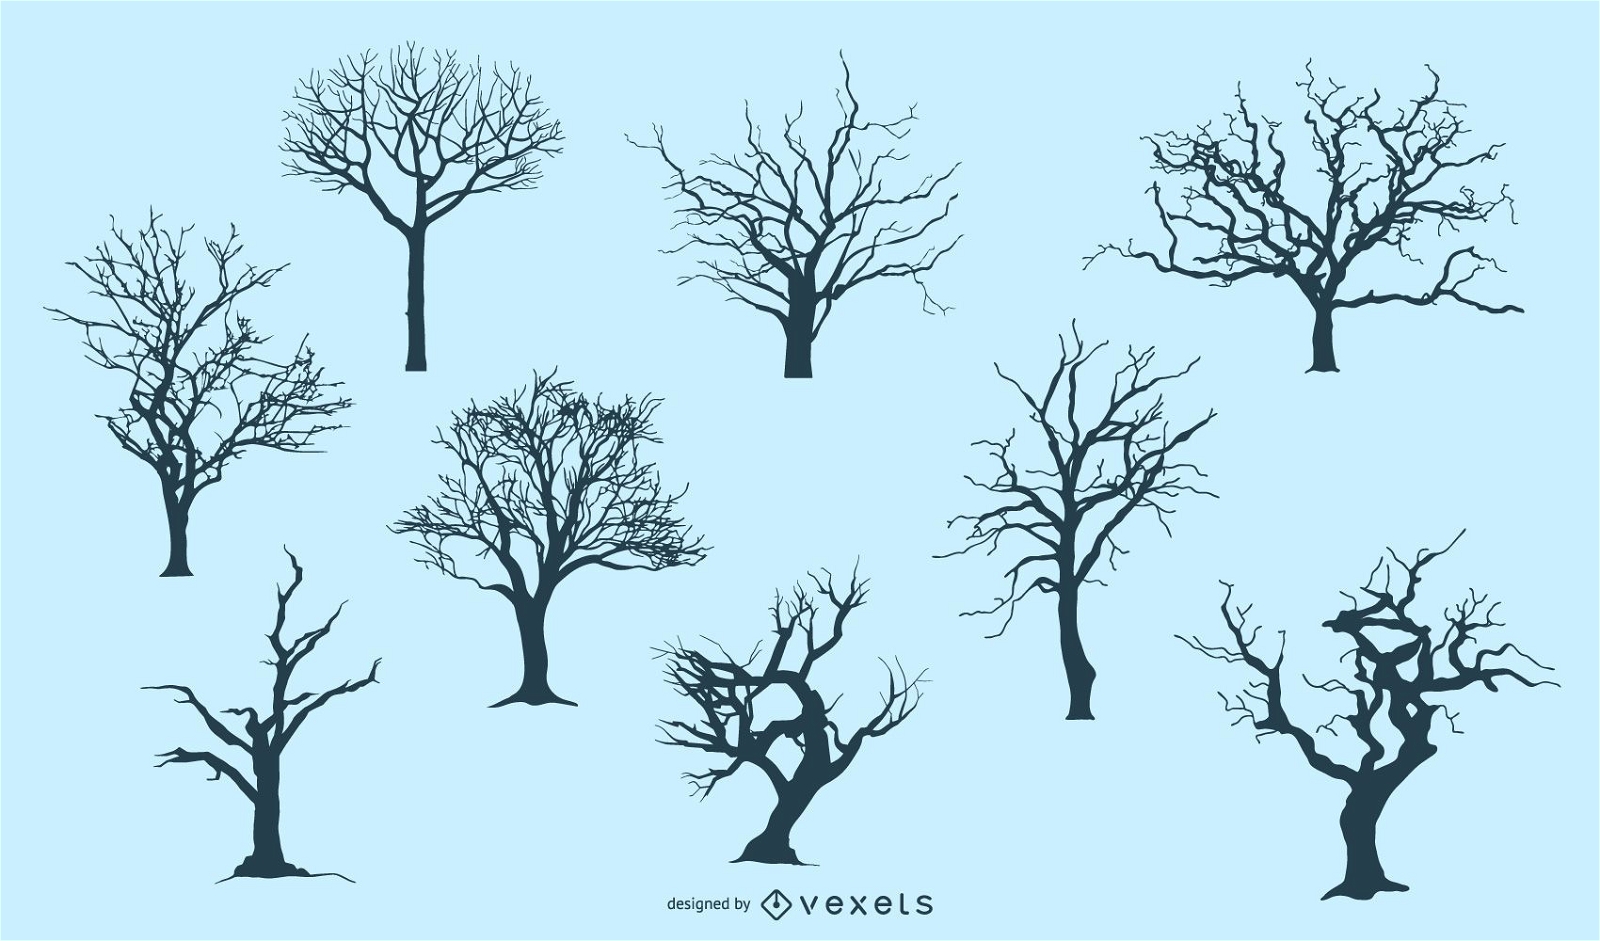 7 siluetas de árboles